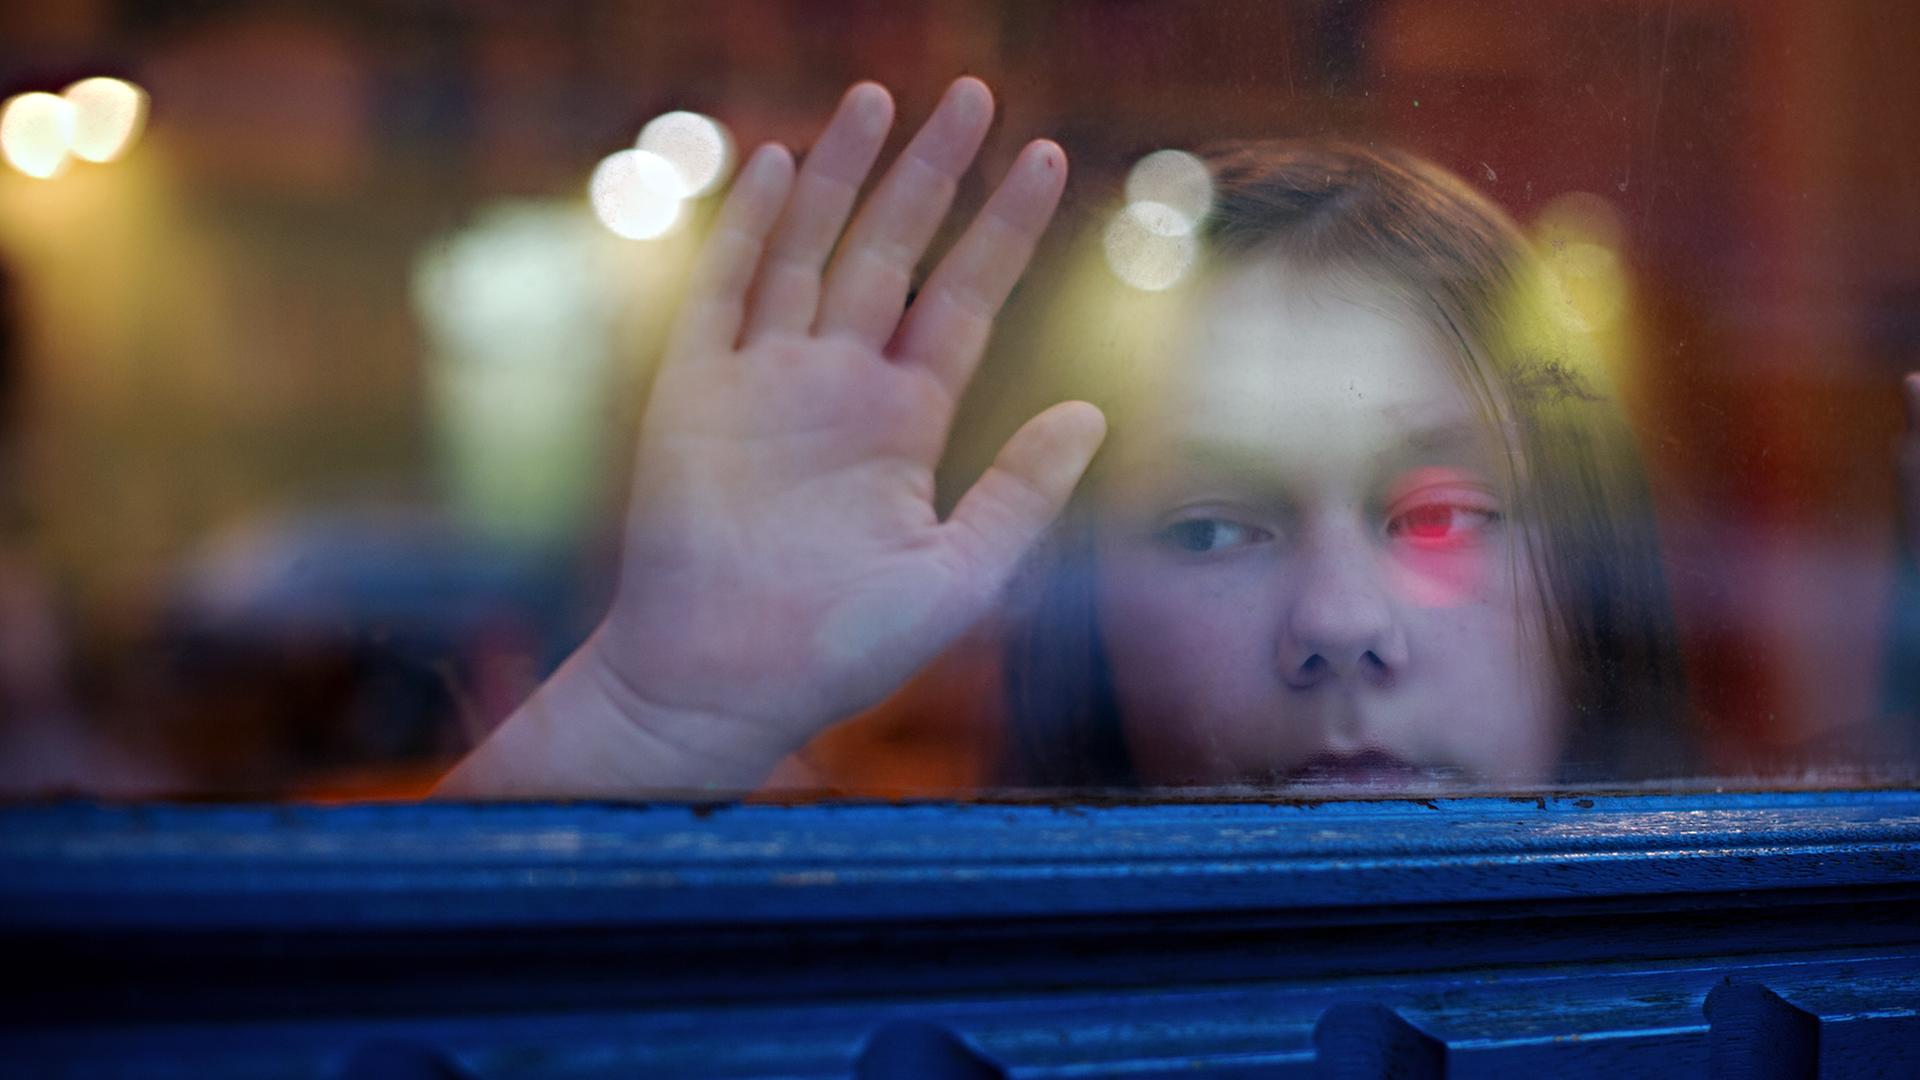 Ein junges Mädchen blickt am 24.01.2014 in Berlin aus einem Fenster.